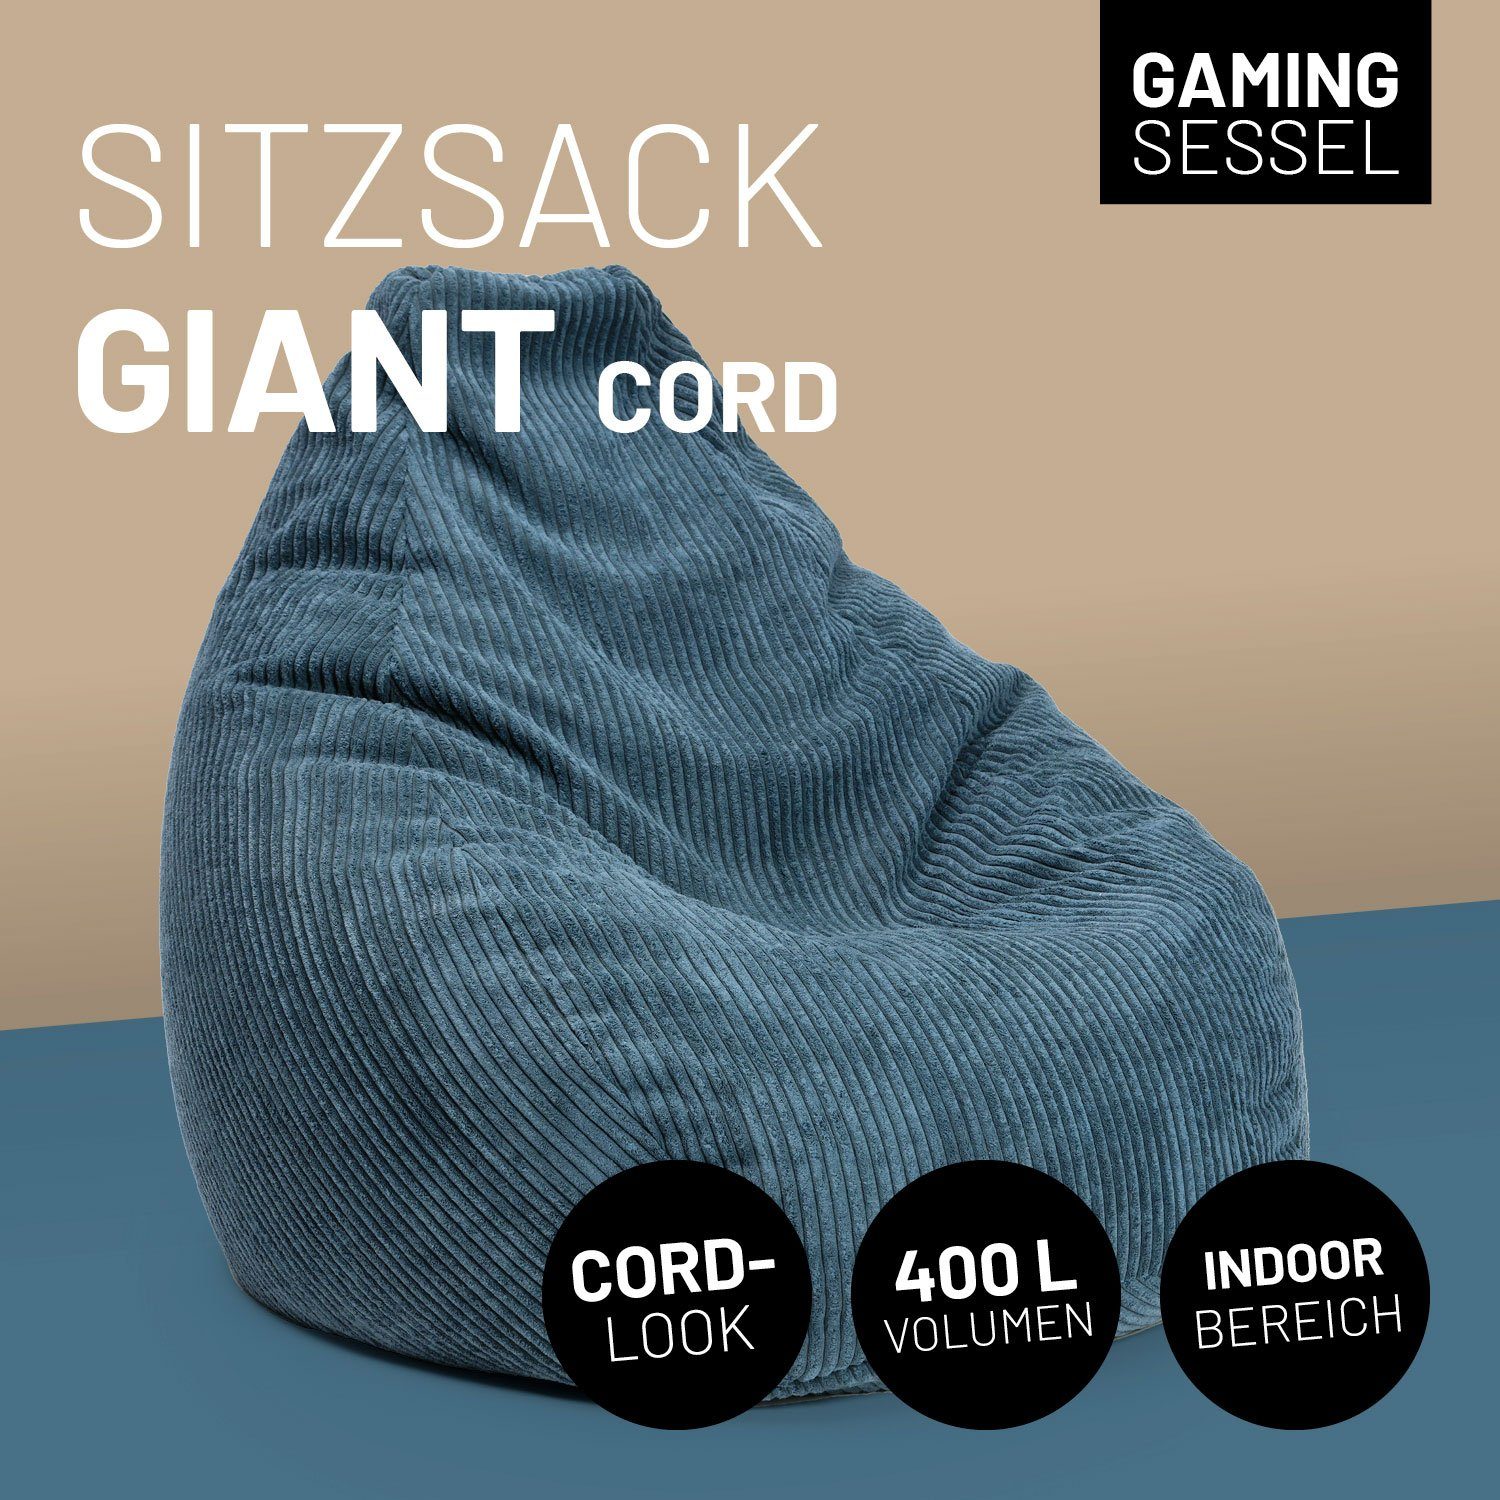 Lumaland Stabile Gaming, Sitzsack & verdeckter Cord Lehne trendig fürs GIANT Reißverschluss, Sitzsack ideal Gemütlichkeit vereint navyblau